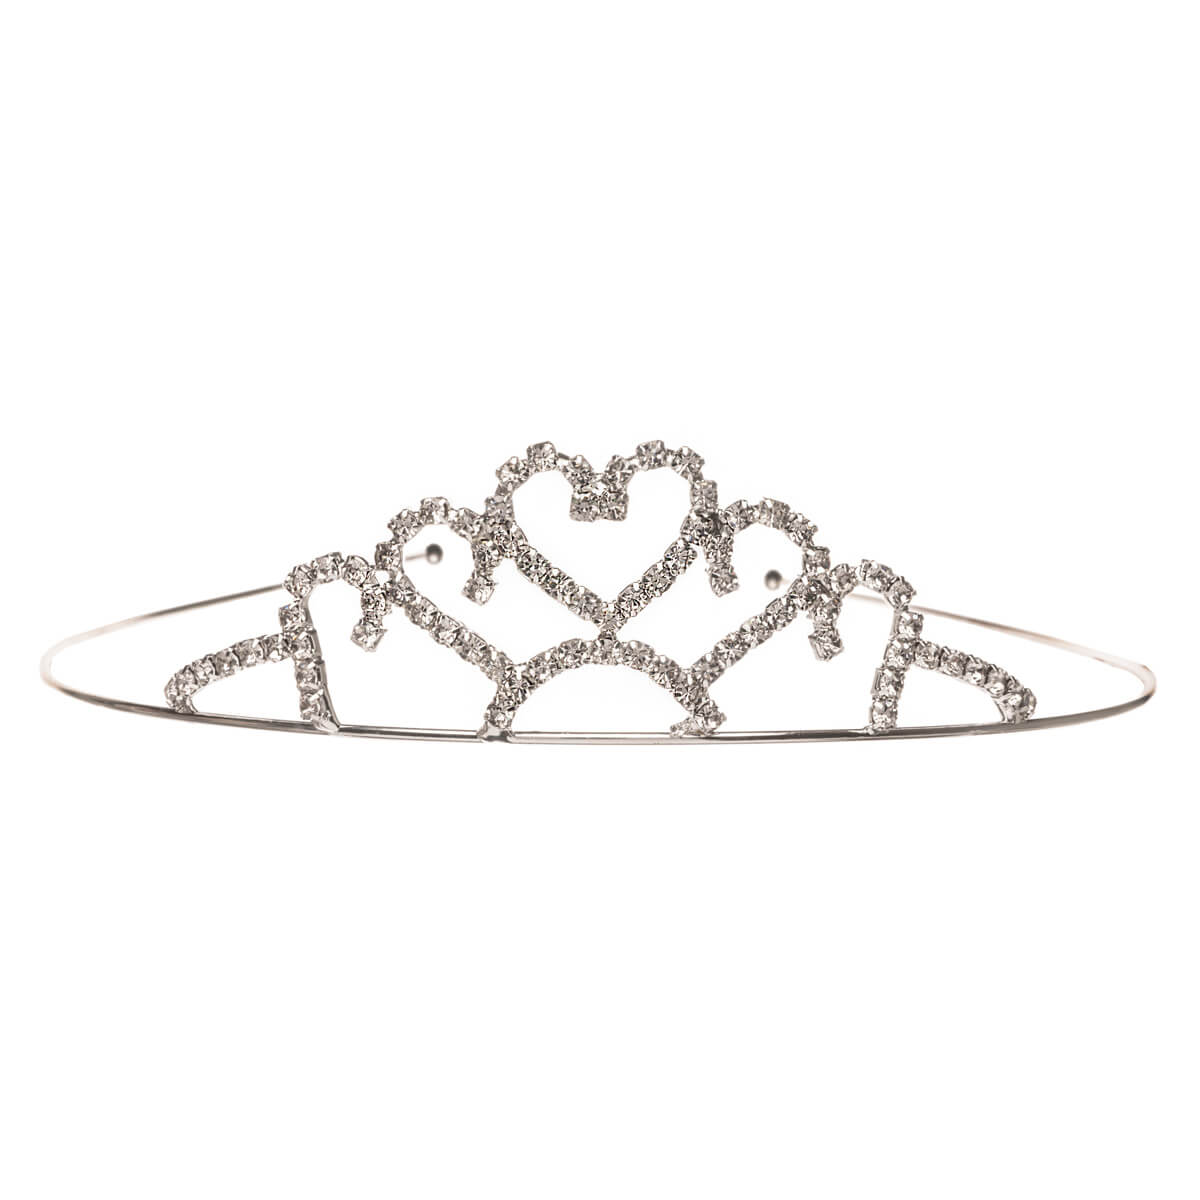 Glass stone tiara hairstyle hair clip